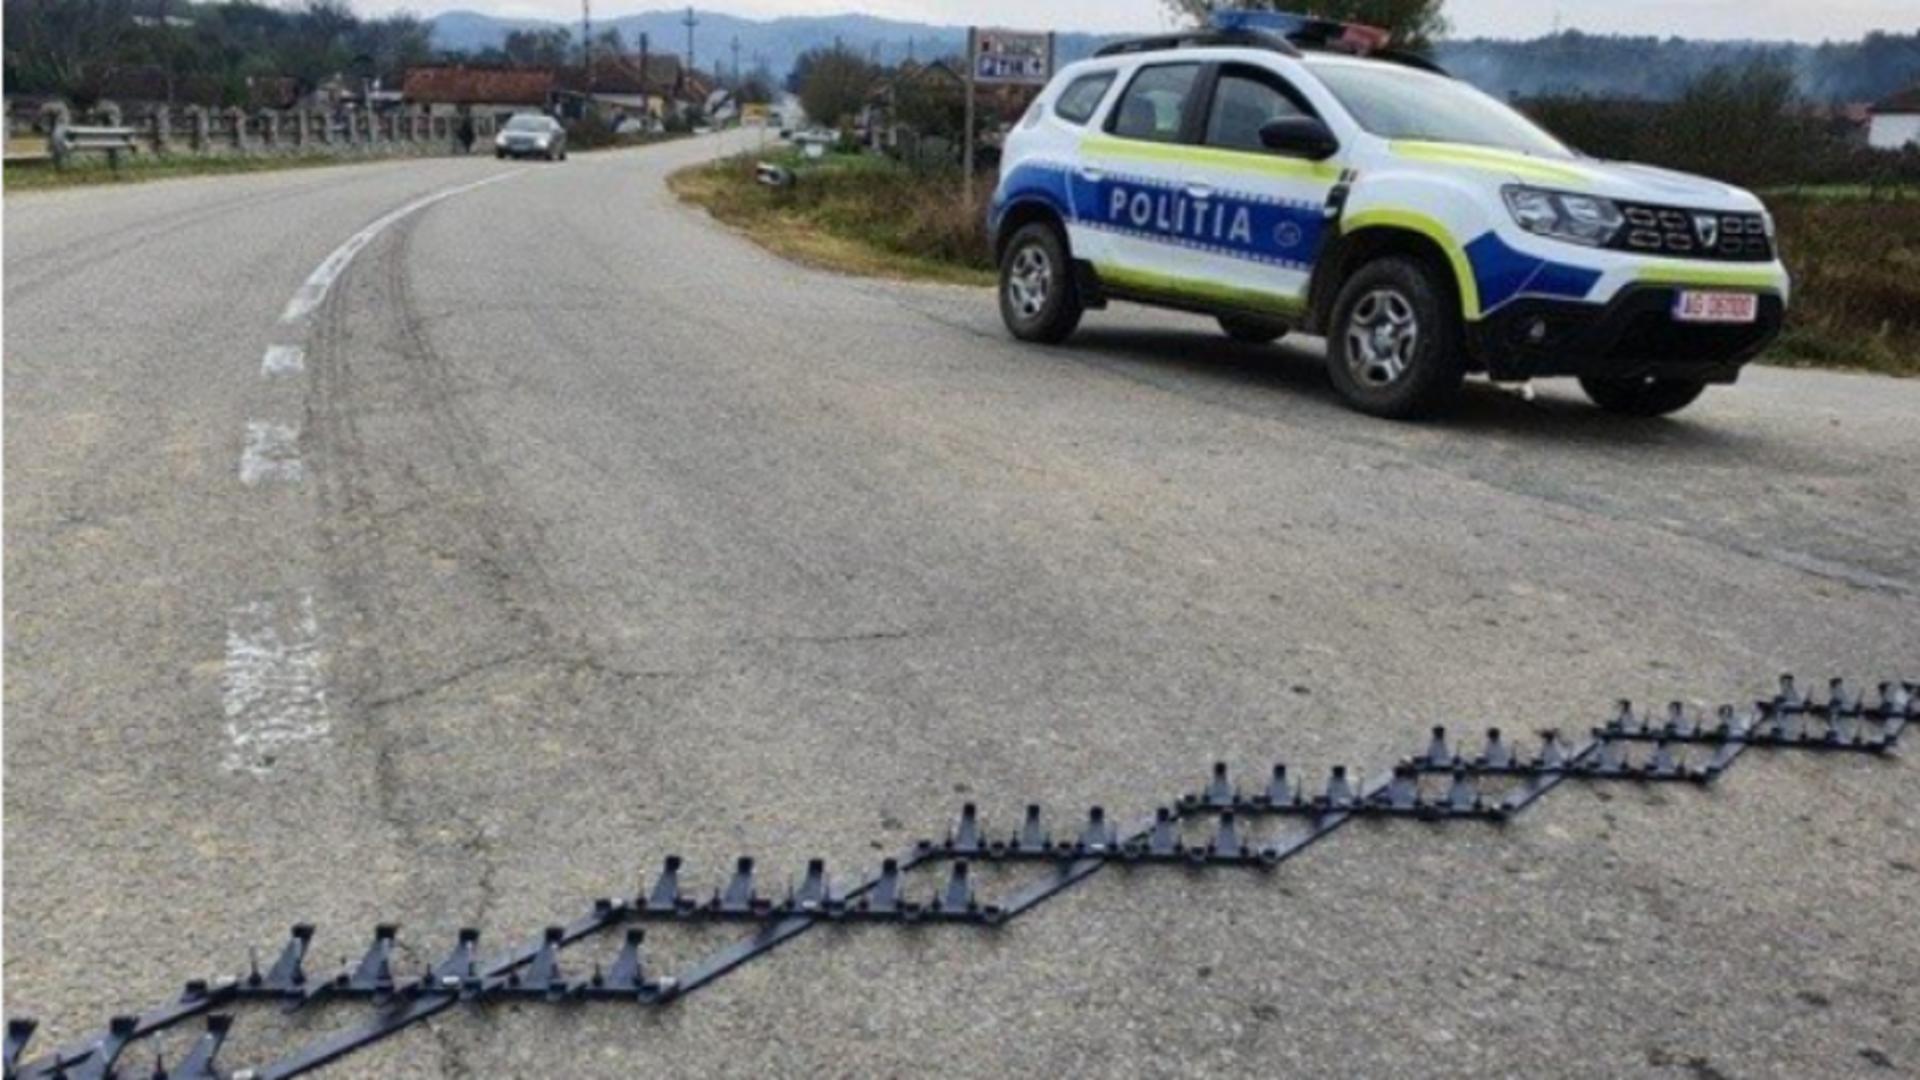 Șofer vitezoman, oprit de polițiști cu ajutorul dispozitivului tip spike - Ce sancțiuni a primit/ Captură foto Ziarul de Iași